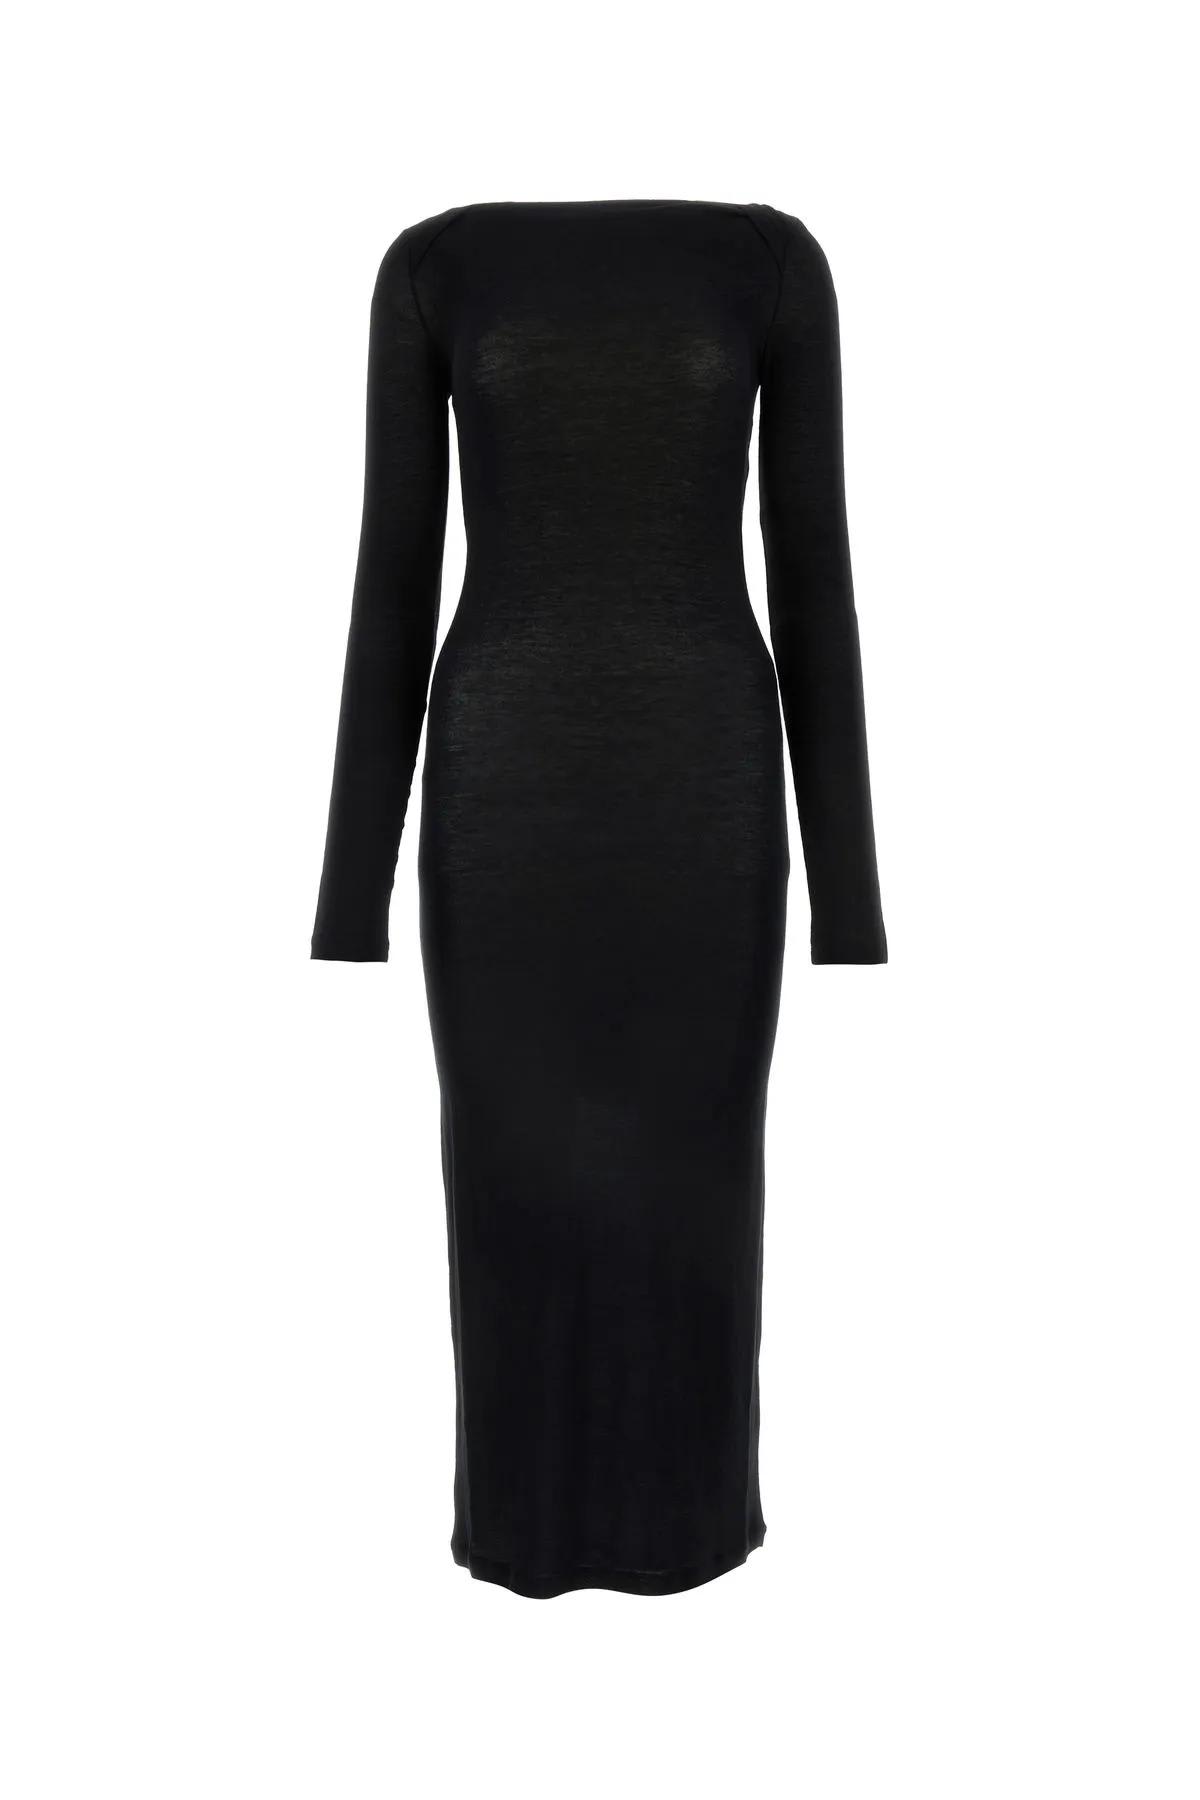 Shop Saint Laurent Black Viscose Blend Dress